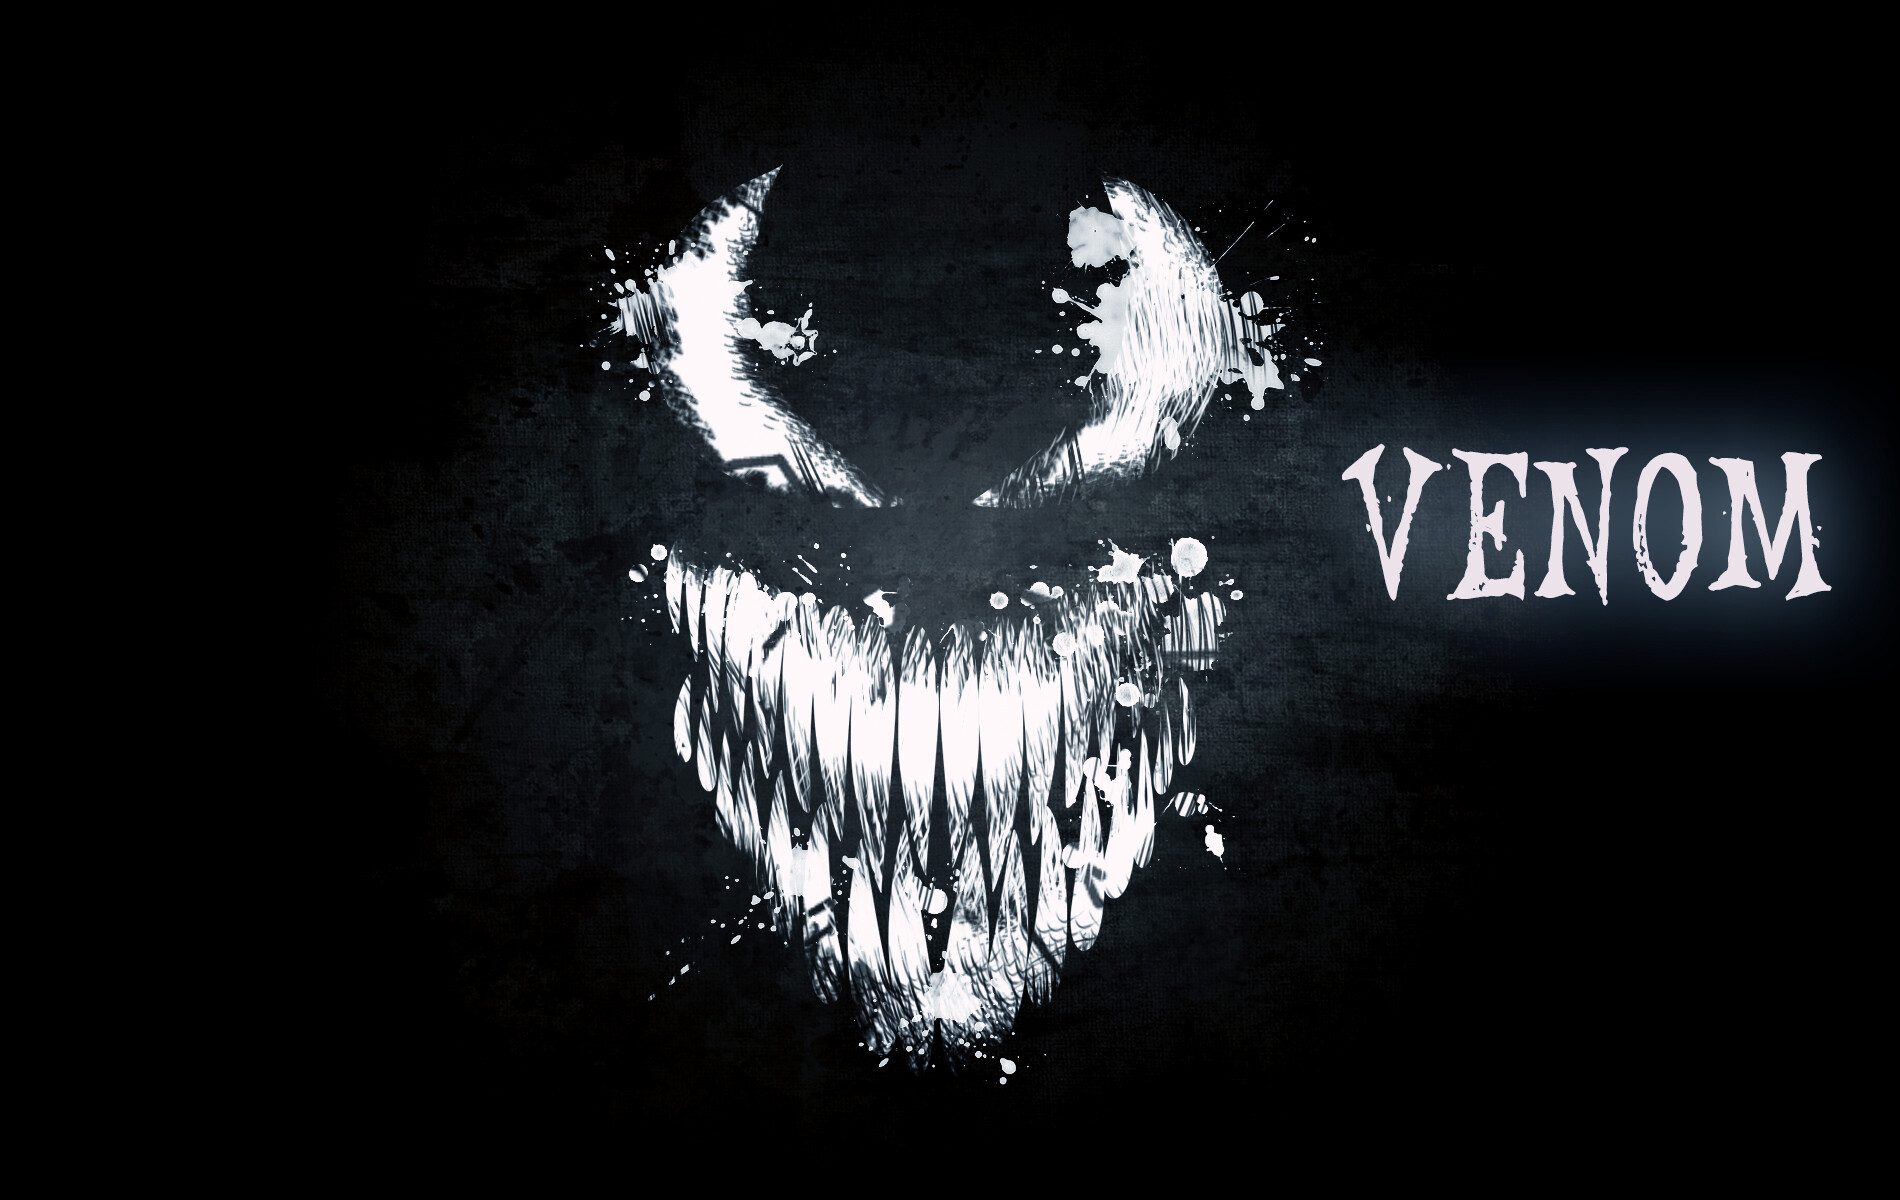 ArtStation - Dark Venom